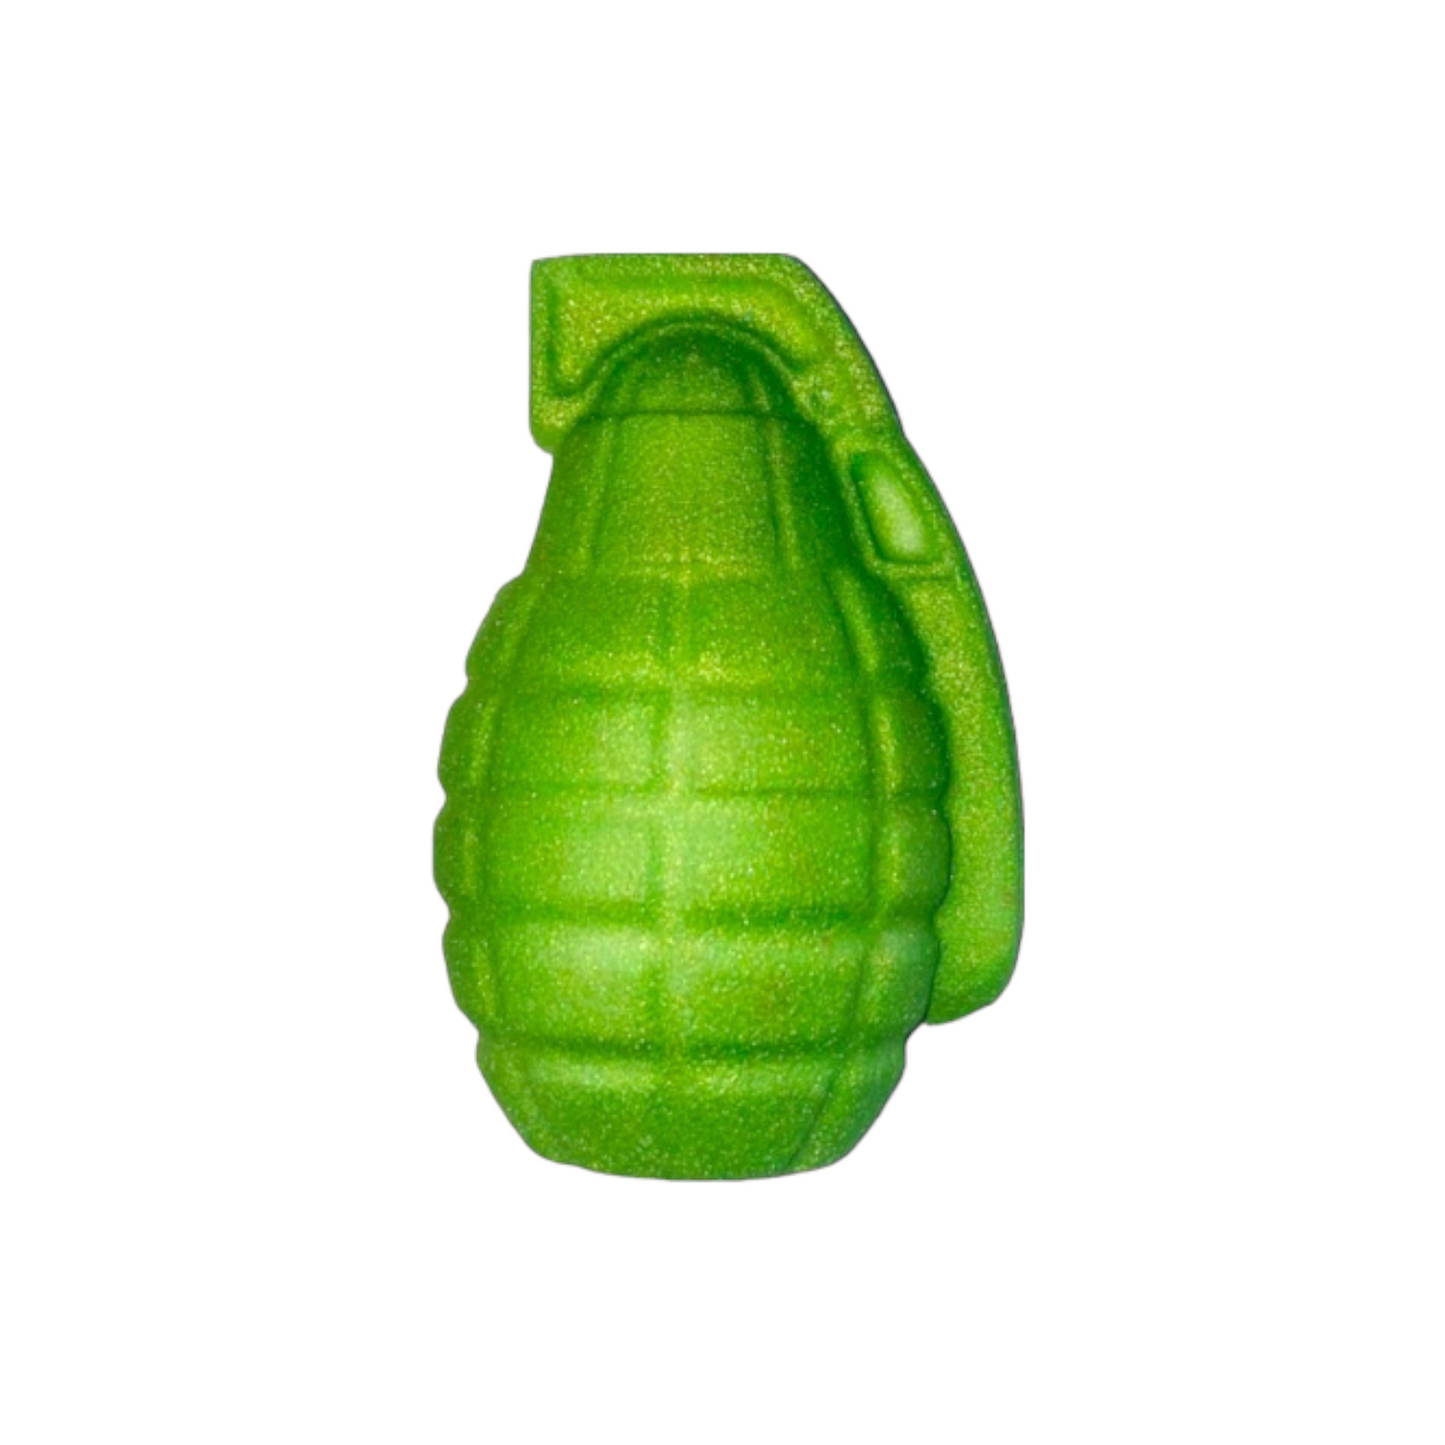 Grenade Bath Bomb